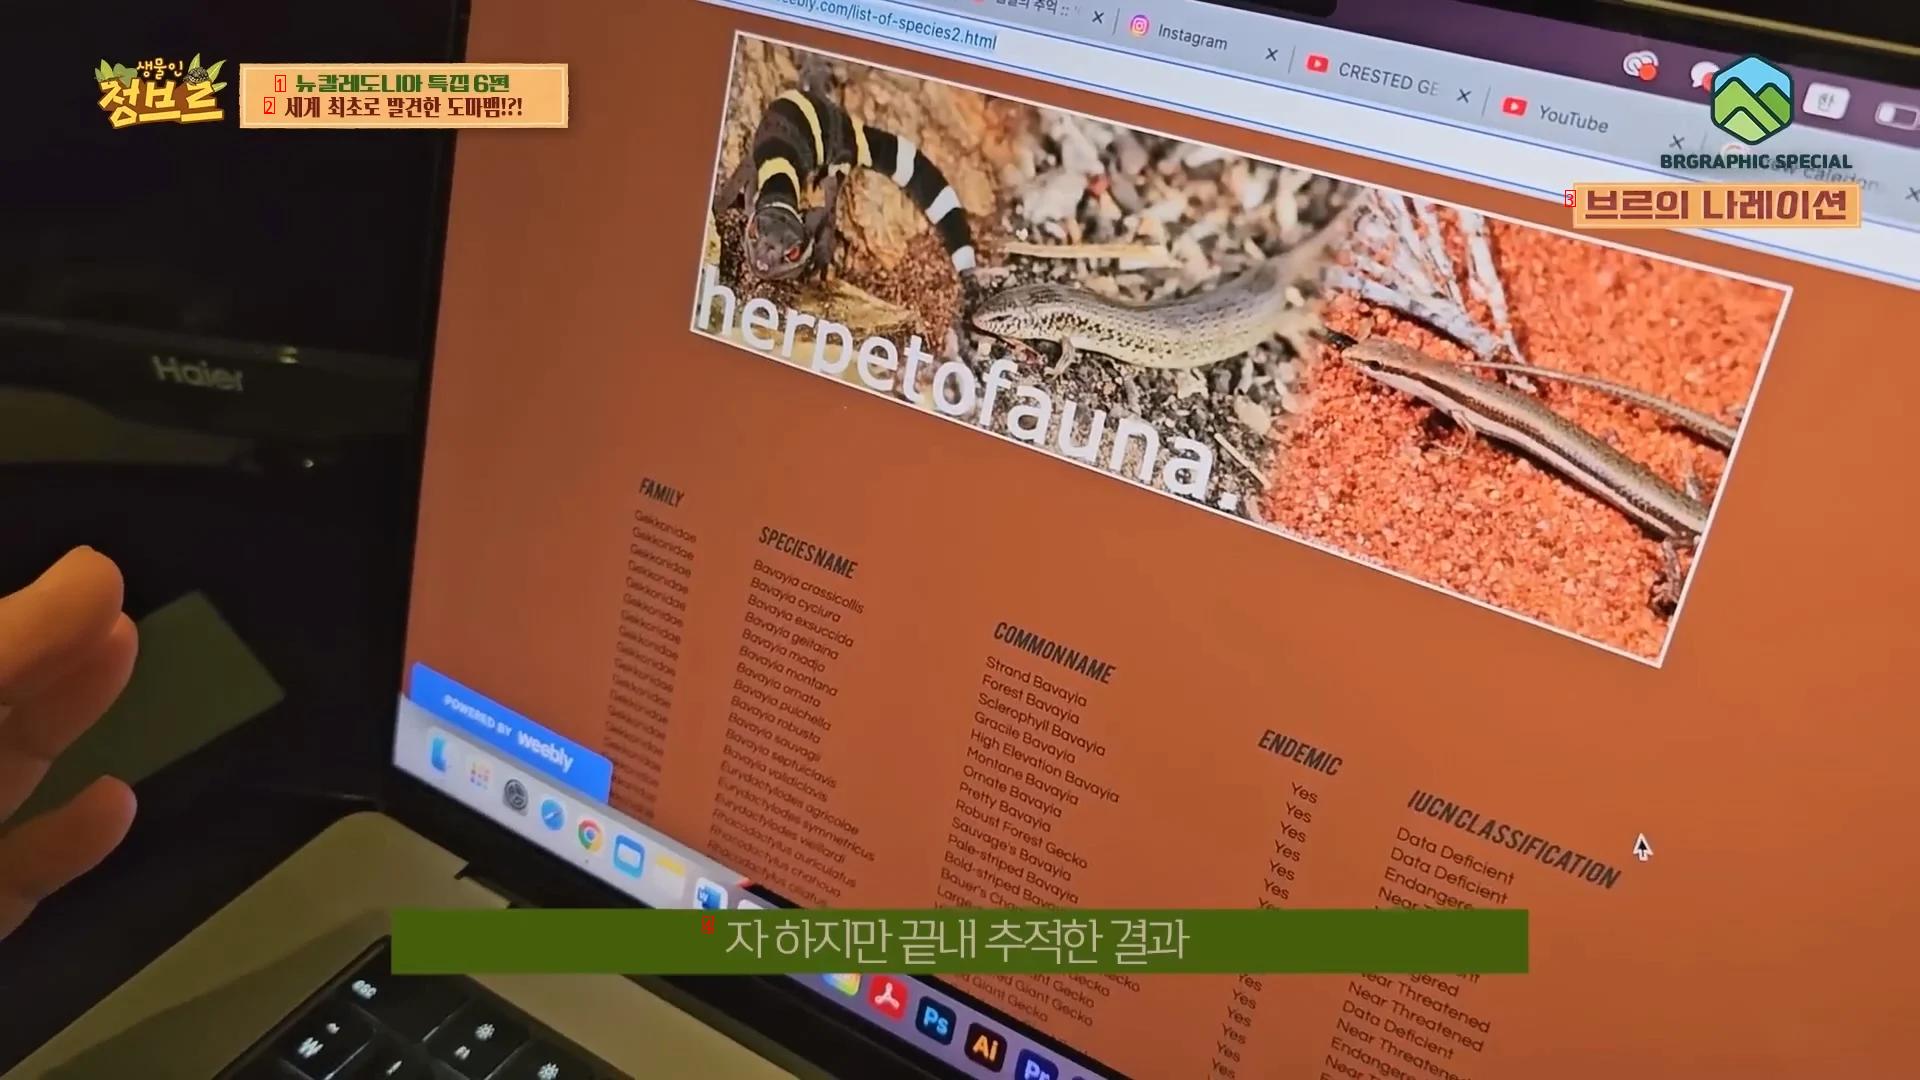 한국유튜버가 세계 최초로 촬영한걸로 예상되는 도마뱀